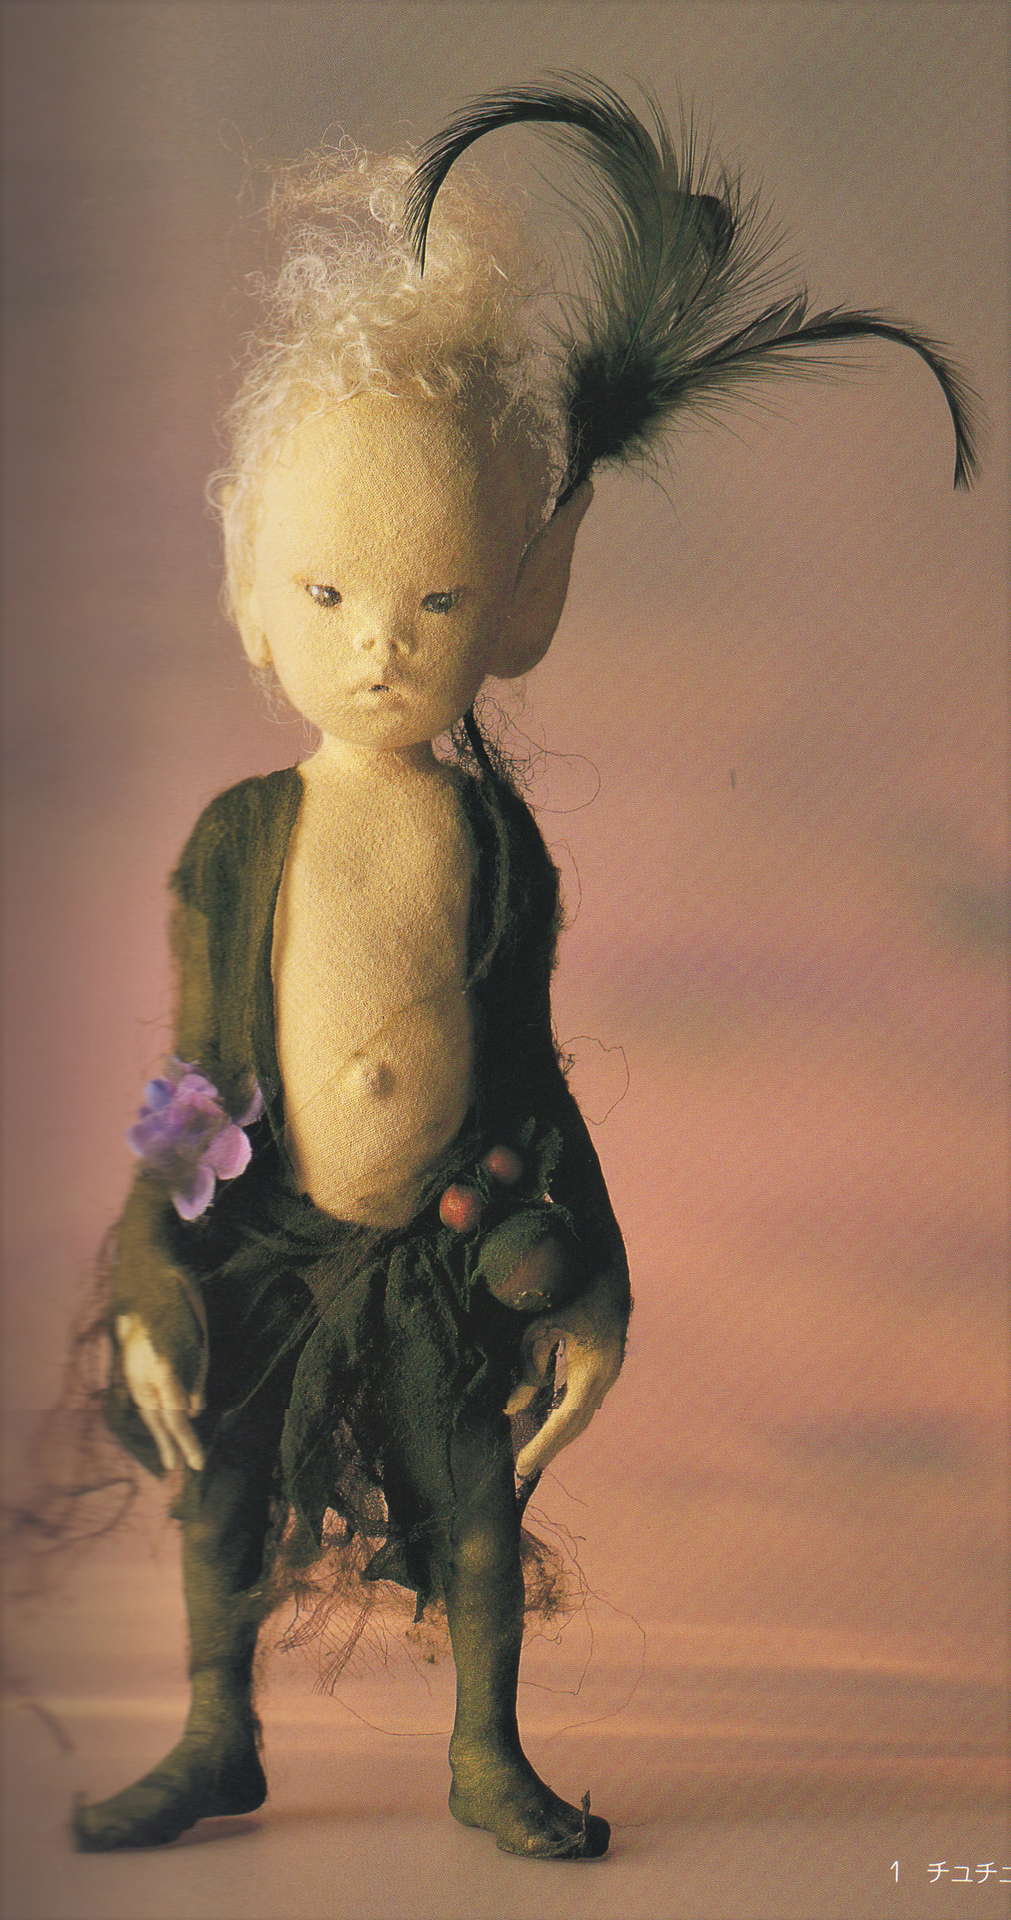 与勇輝 陶器人形 樹の祠から顔を出す森の妖精「ニングル」 壁掛け時計 